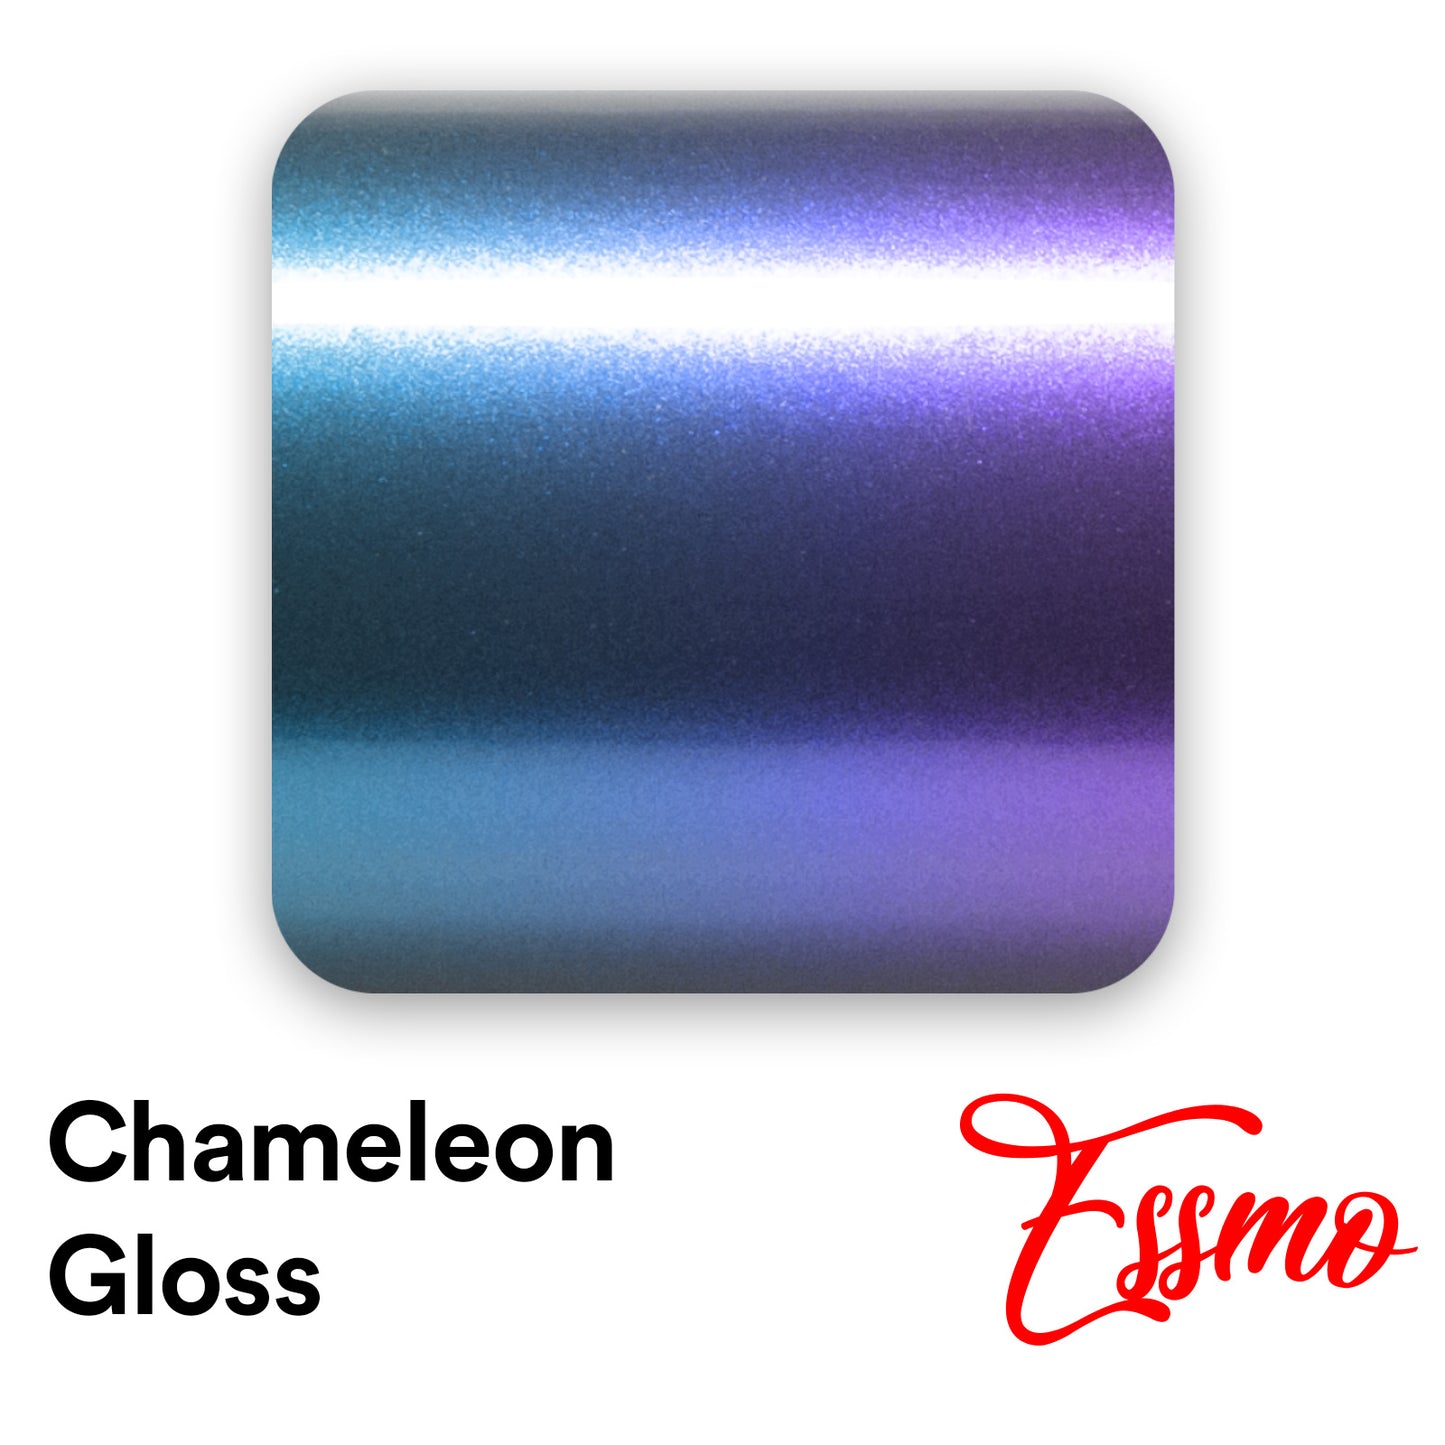 Chameleon Gloss Magic Blue Vinyl Wrap